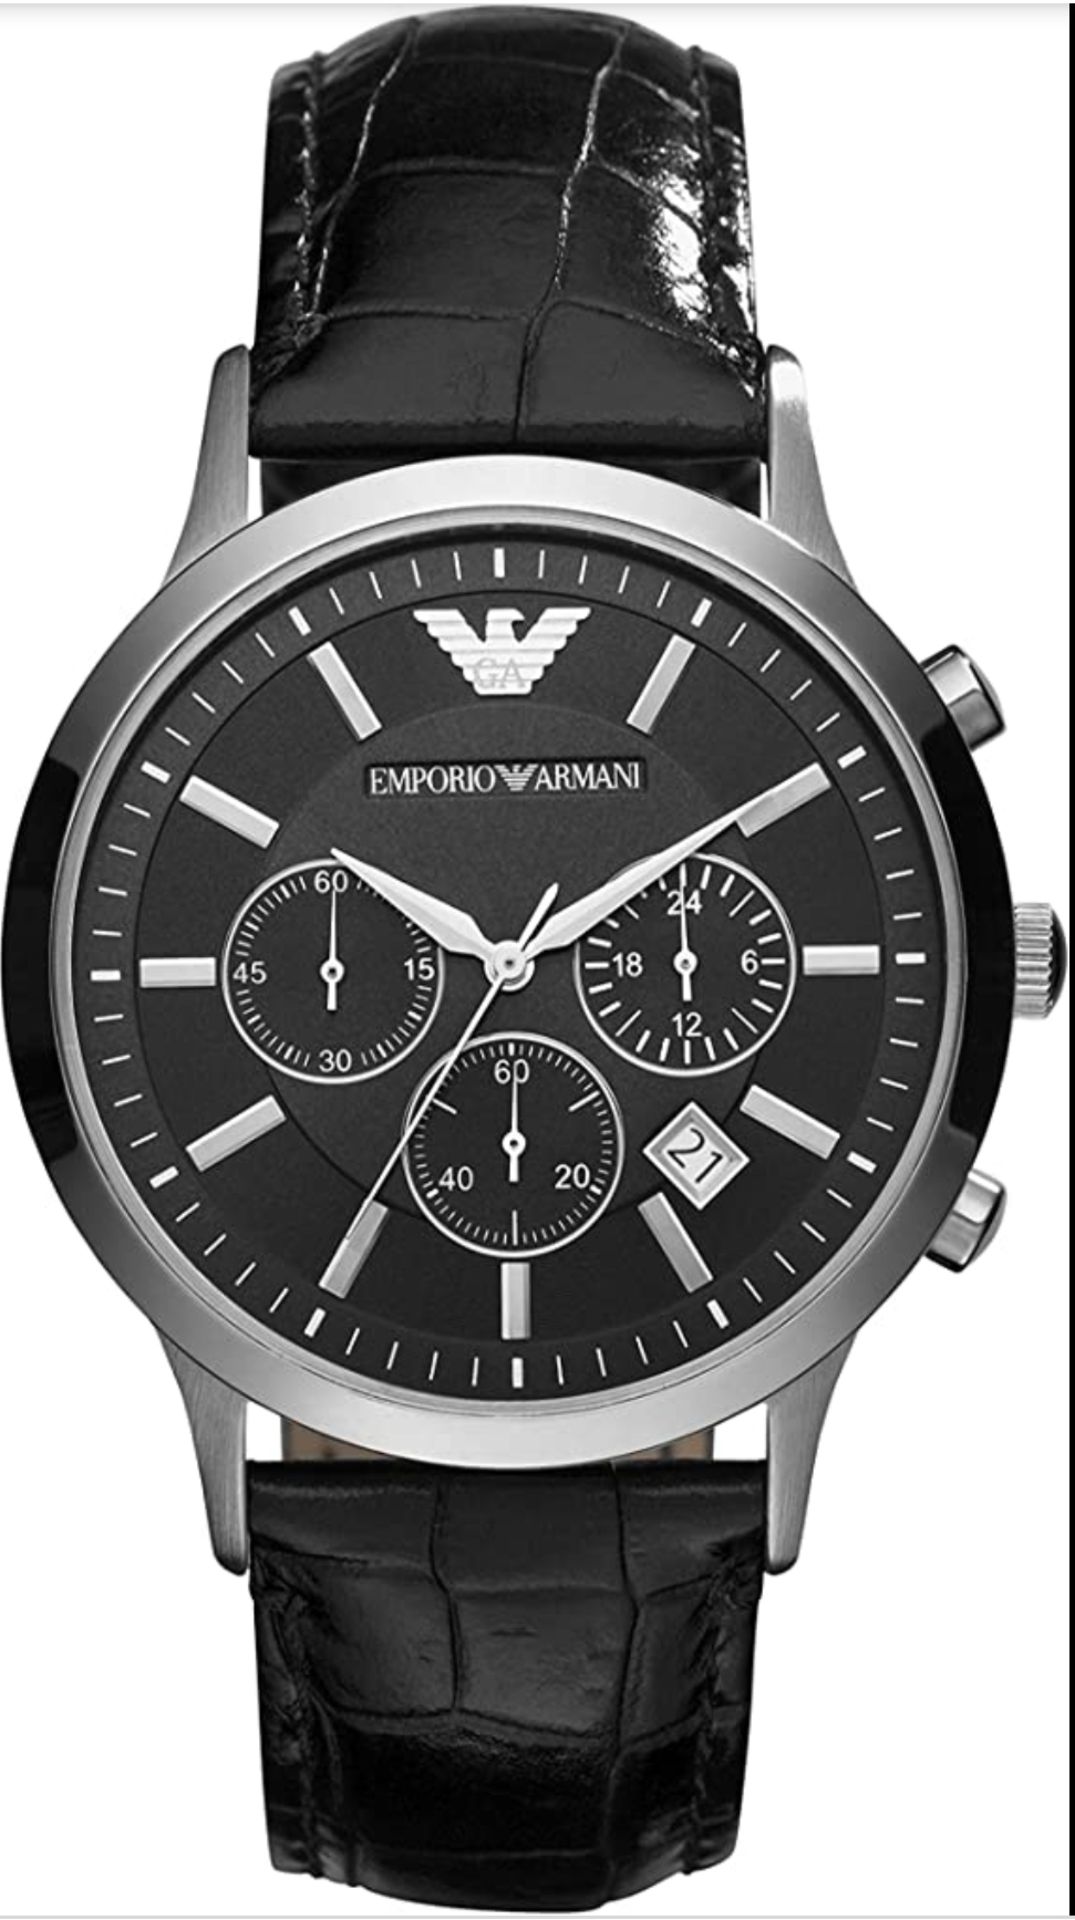 Emporio Armani AR2447 Men's Renato Black Leather Strap Chronograph Watch - Image 3 of 5